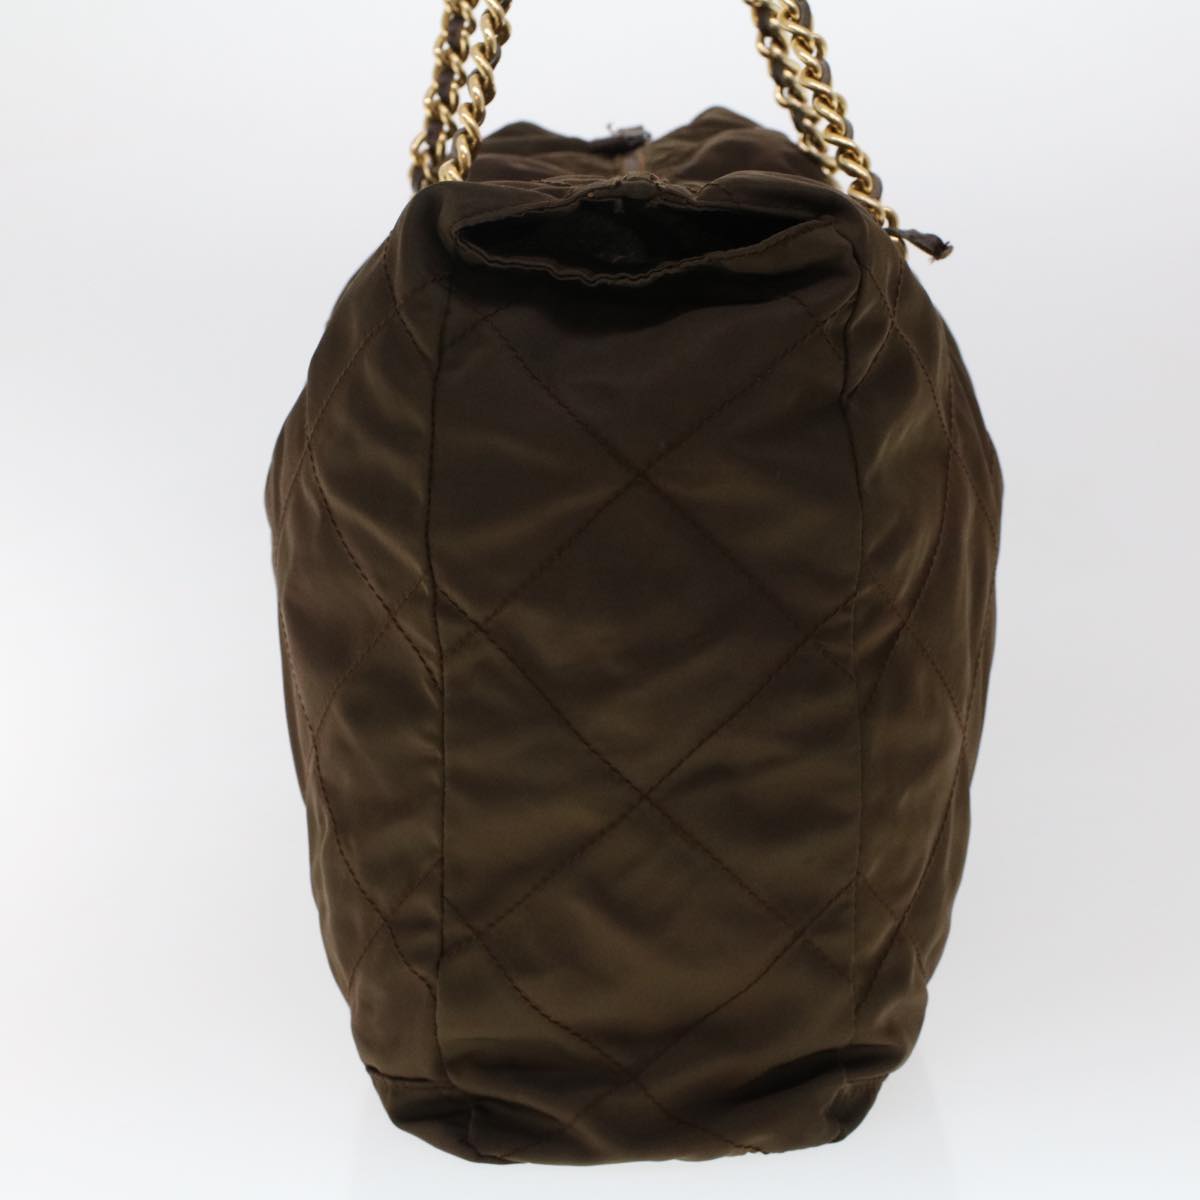 PRADA Chain Boston Bag Nylon Brown Auth bs6551